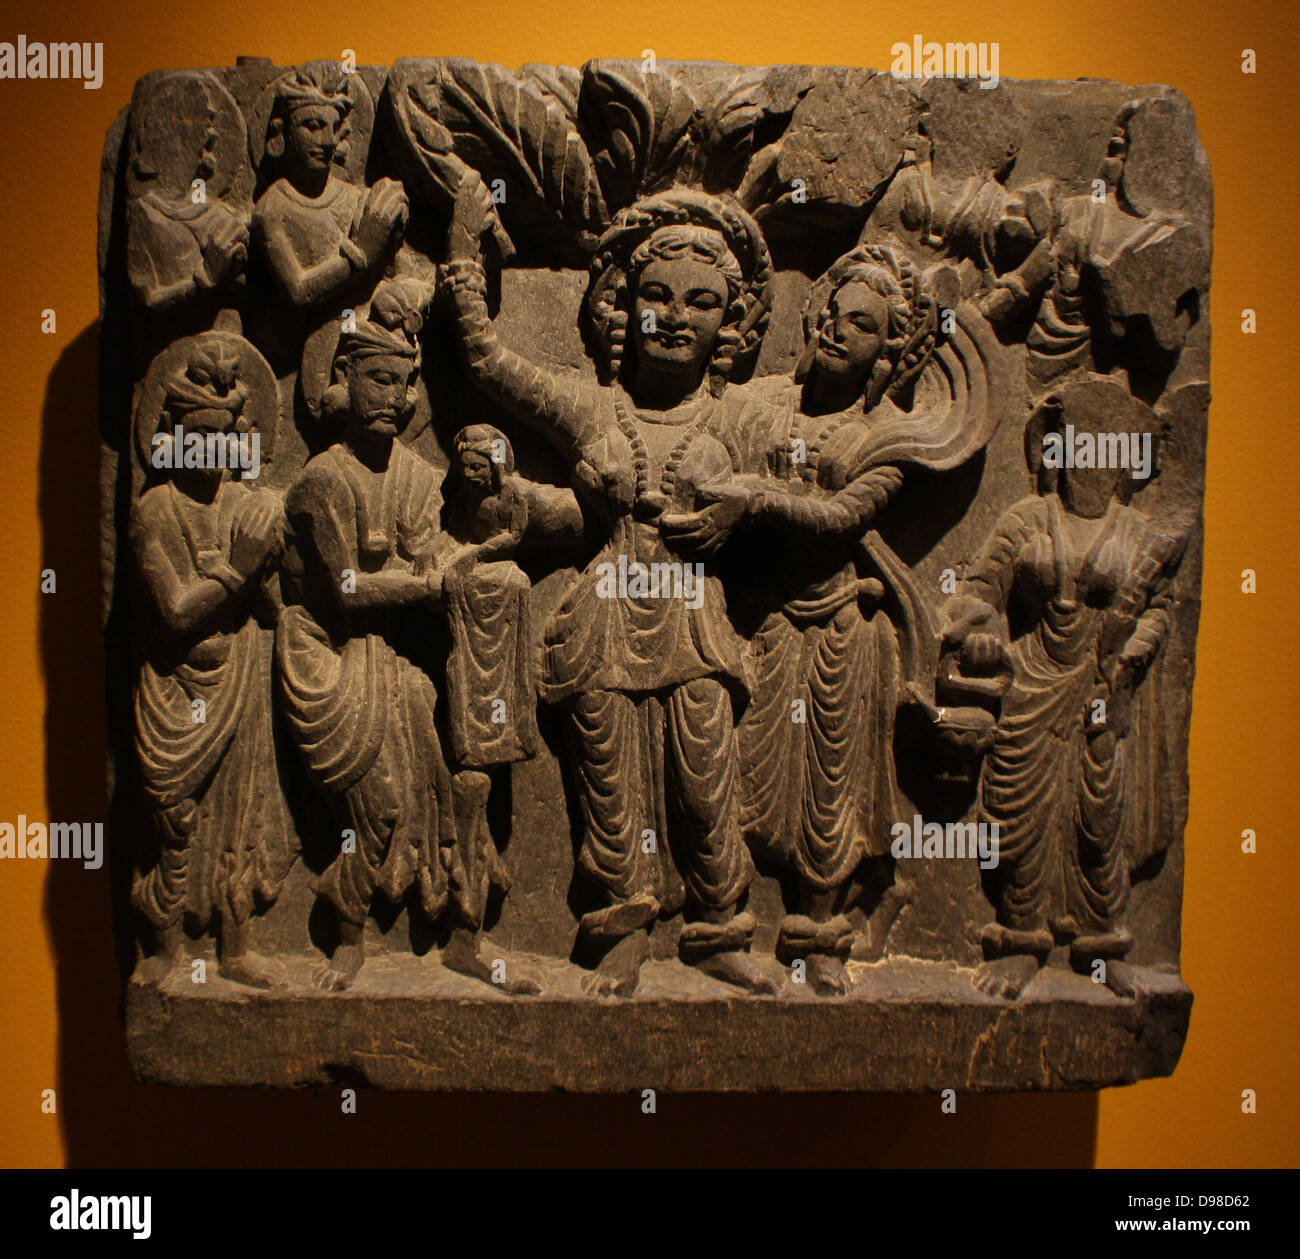 Geburt des Buddha. Gandhara, über AD200. Schiefer. In einem Hain, Queen Maya gebiert Prinz Siddhartha Cautama, der zukünftige Buddha, von ihrer rechten Seite. Das Kind wird von der Gott Indra erhalten, während andere Gottheiten in Anwesenheit stehen. Stockfoto